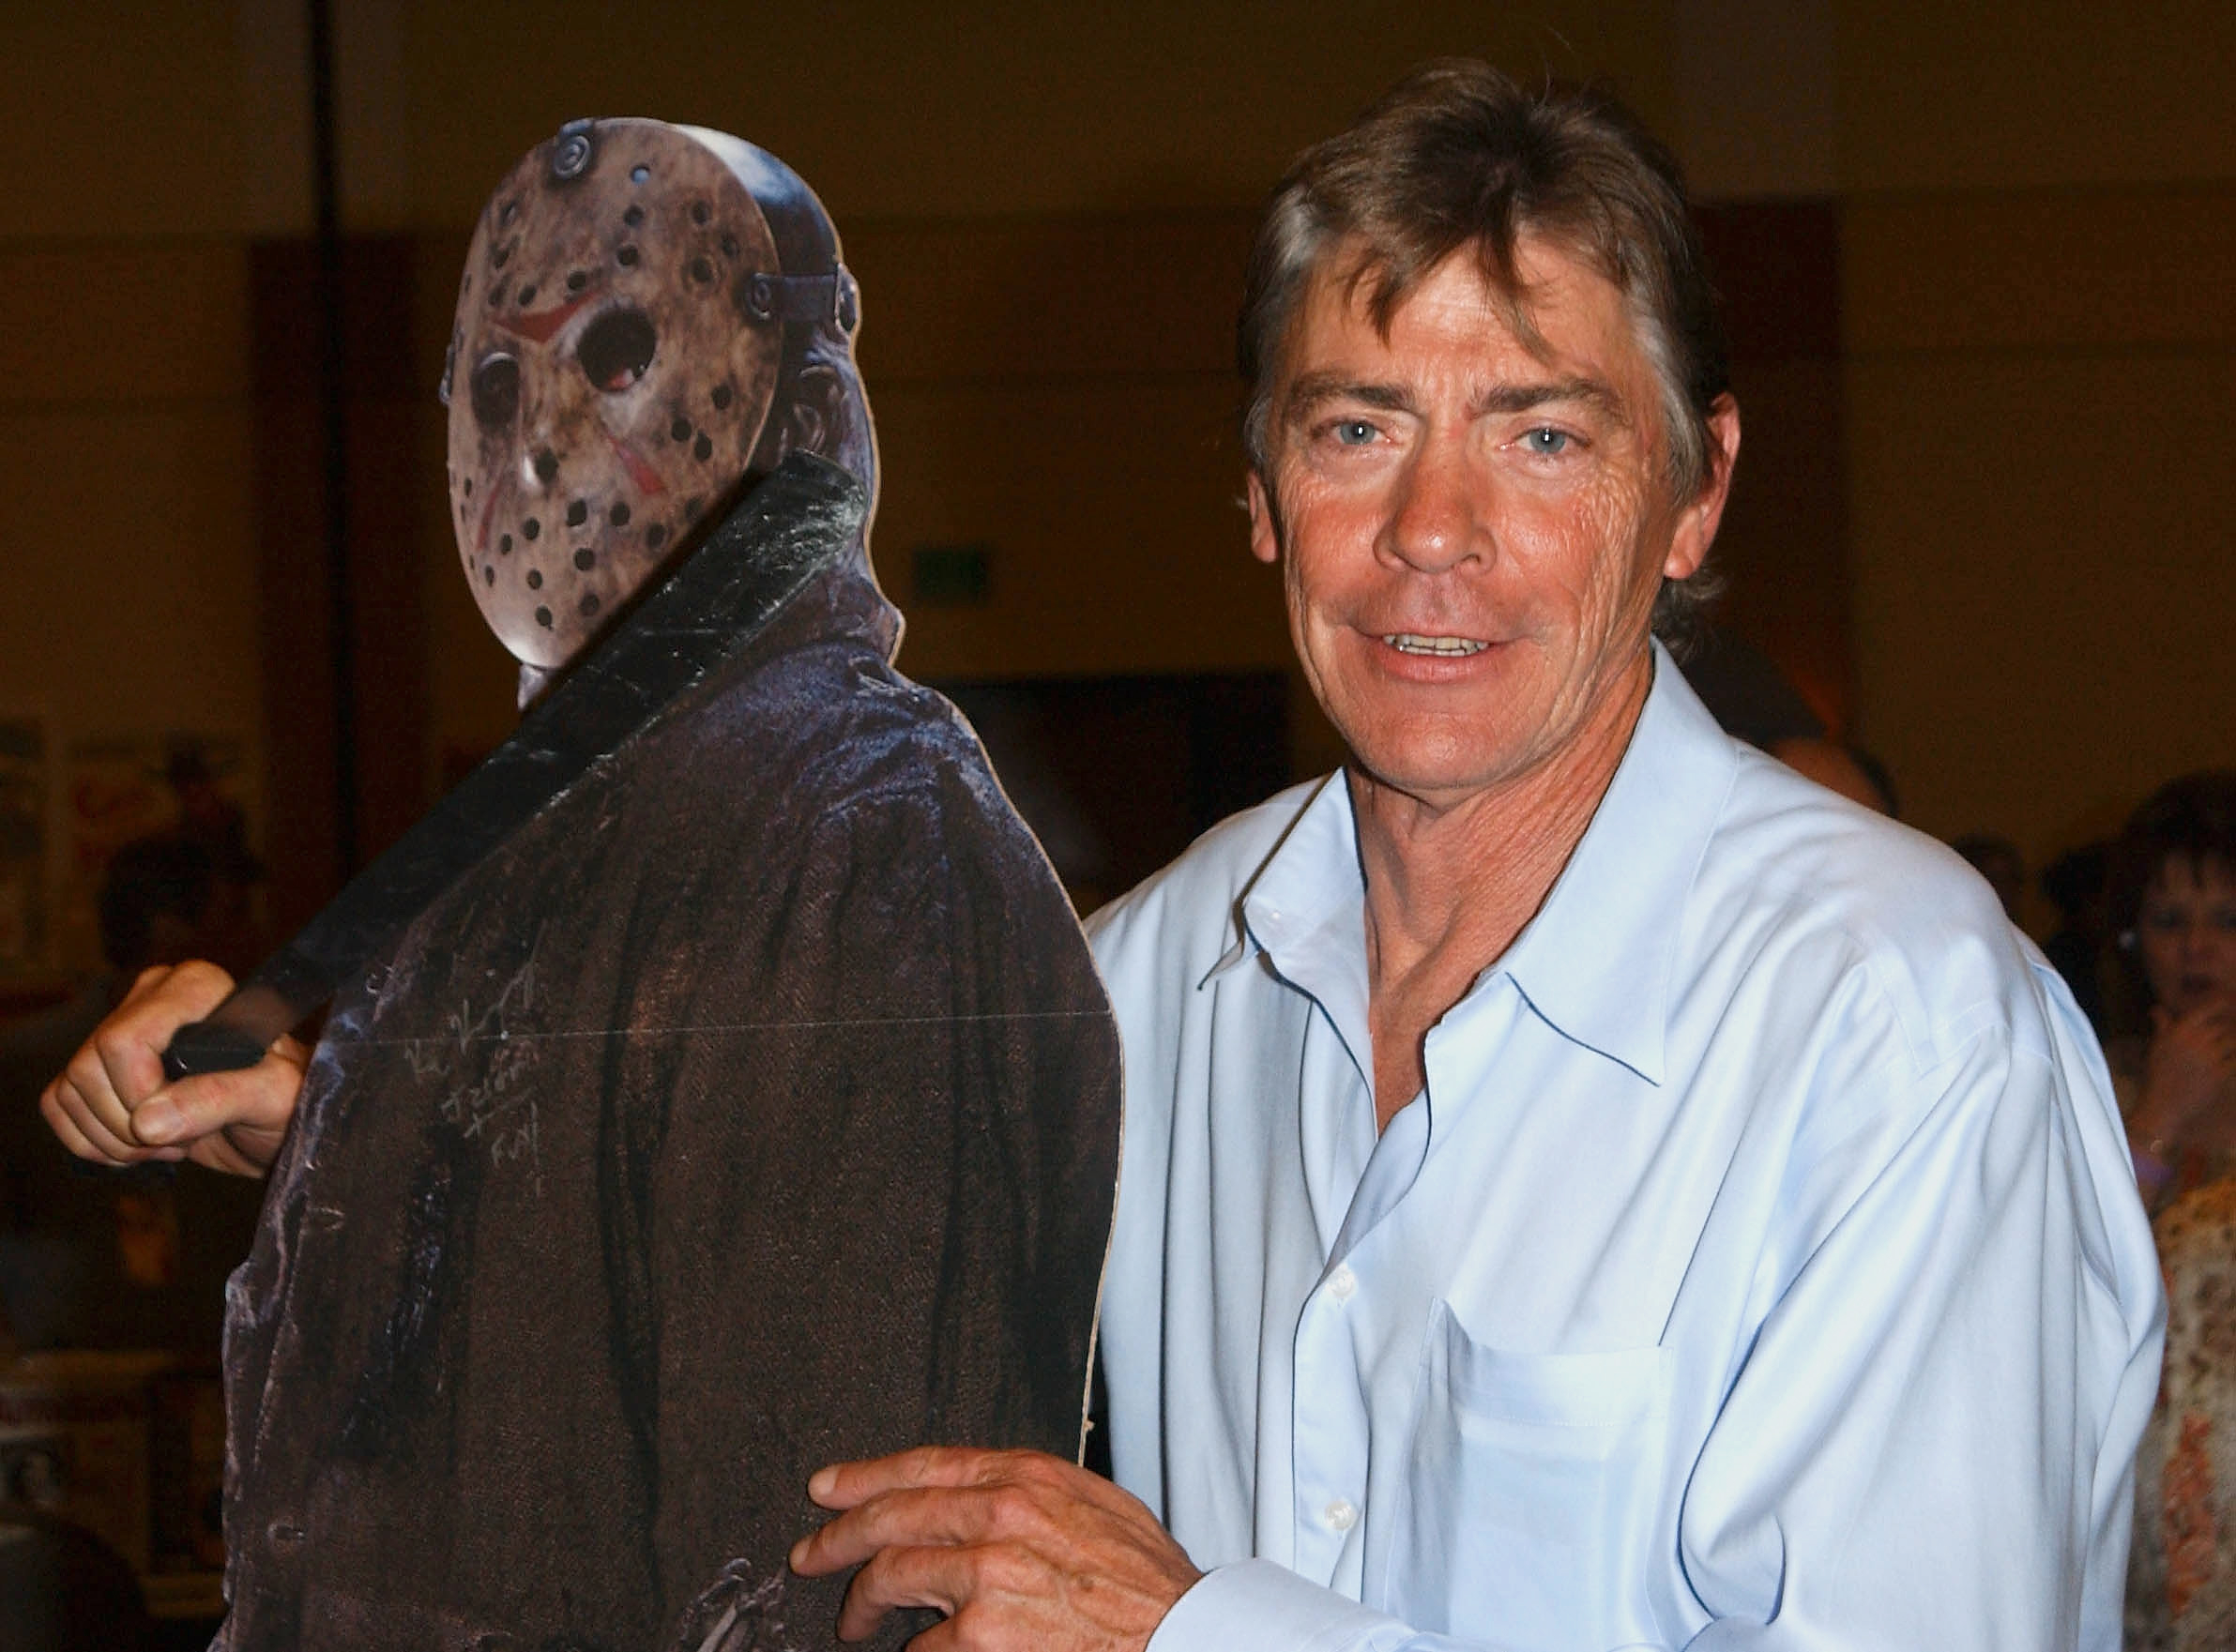 Richard Brooker next to a cardboard cutout of Jason Voorhees